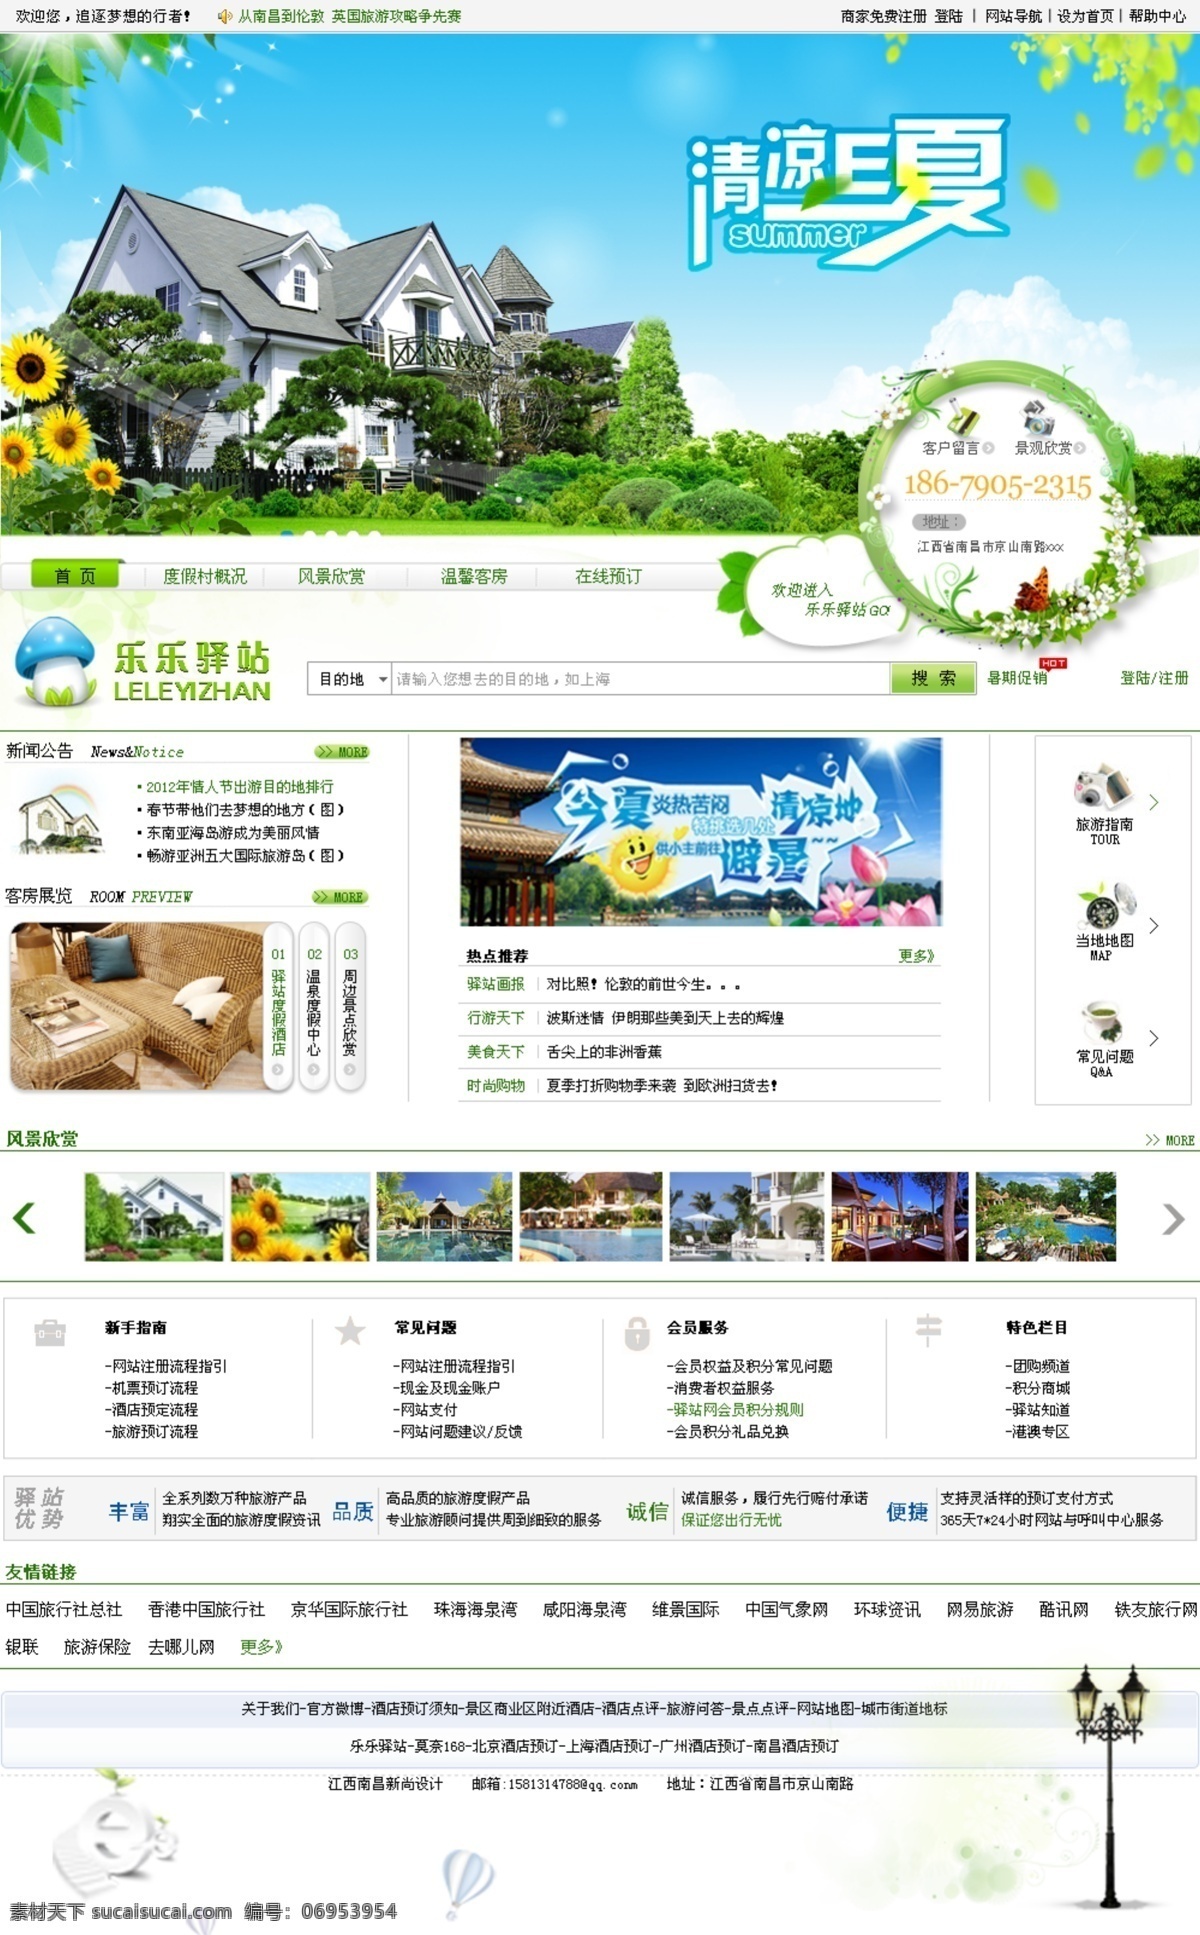 旅游网页模板 旅游 网页模板 模板下载 绿色网页模板 模板 网页设计 源文件 中文模版 网页素材